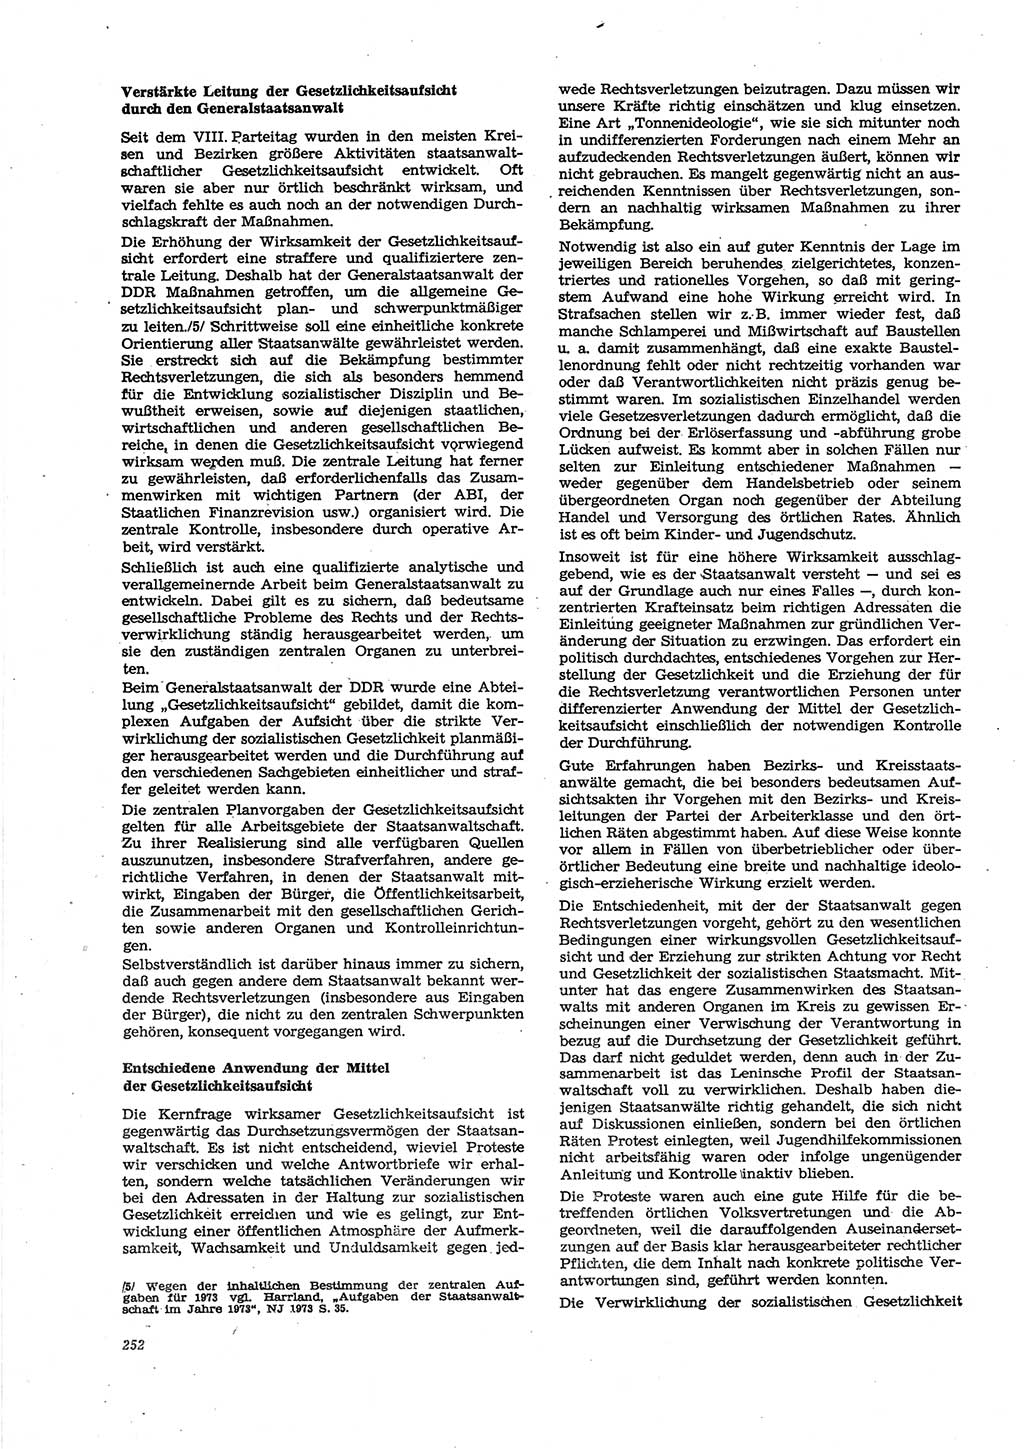 Neue Justiz (NJ), Zeitschrift für Recht und Rechtswissenschaft [Deutsche Demokratische Republik (DDR)], 27. Jahrgang 1973, Seite 252 (NJ DDR 1973, S. 252)